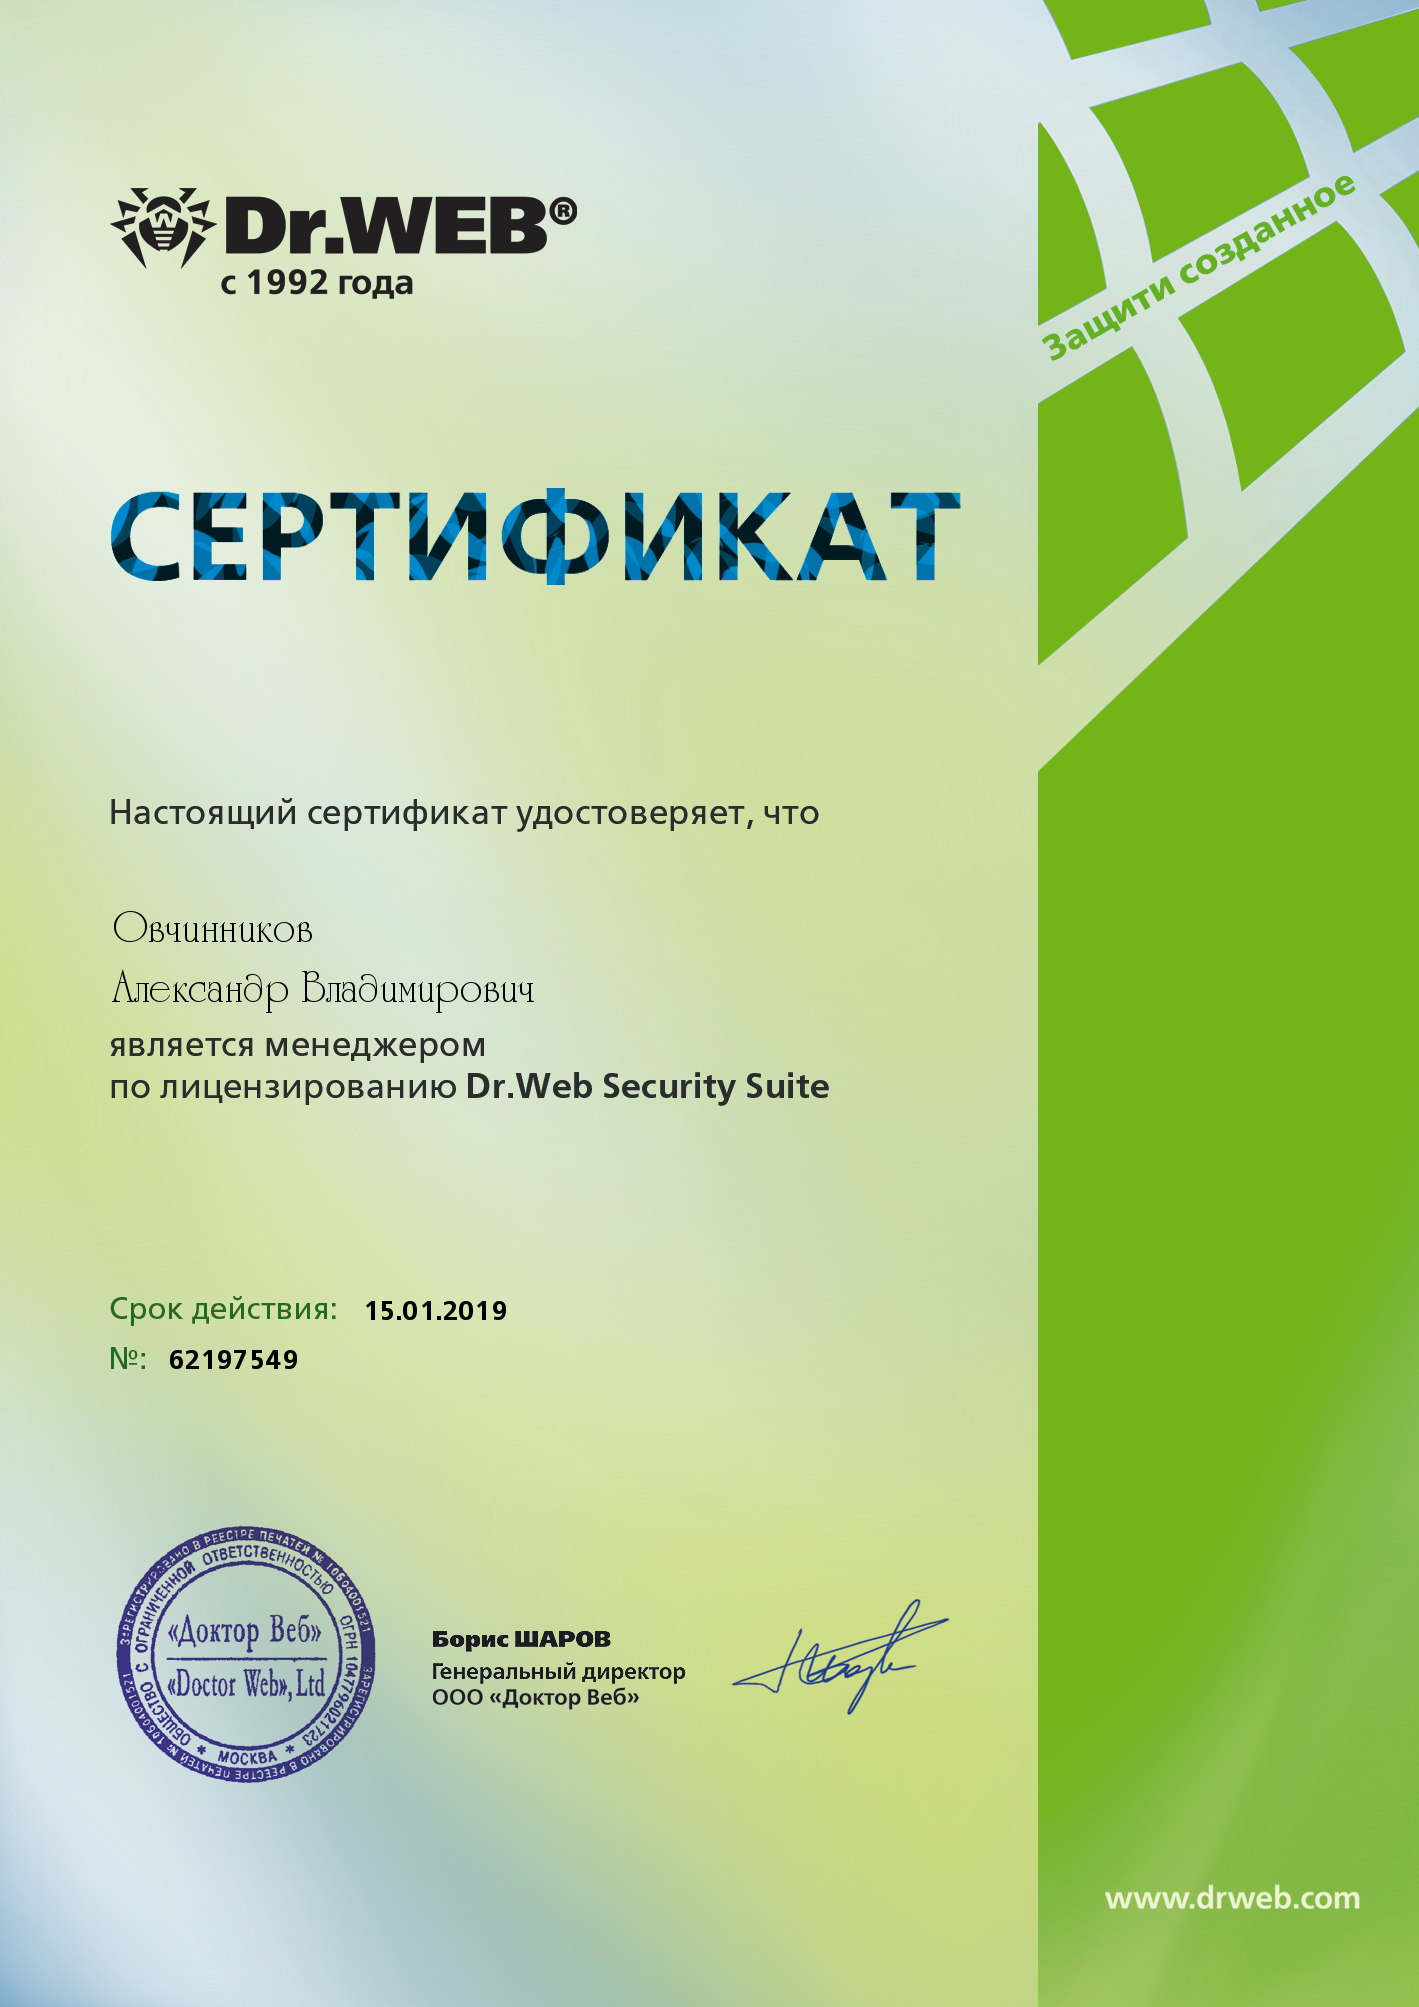 Сертифицированный менеджер по лицензированию Dr.Web Security Suite